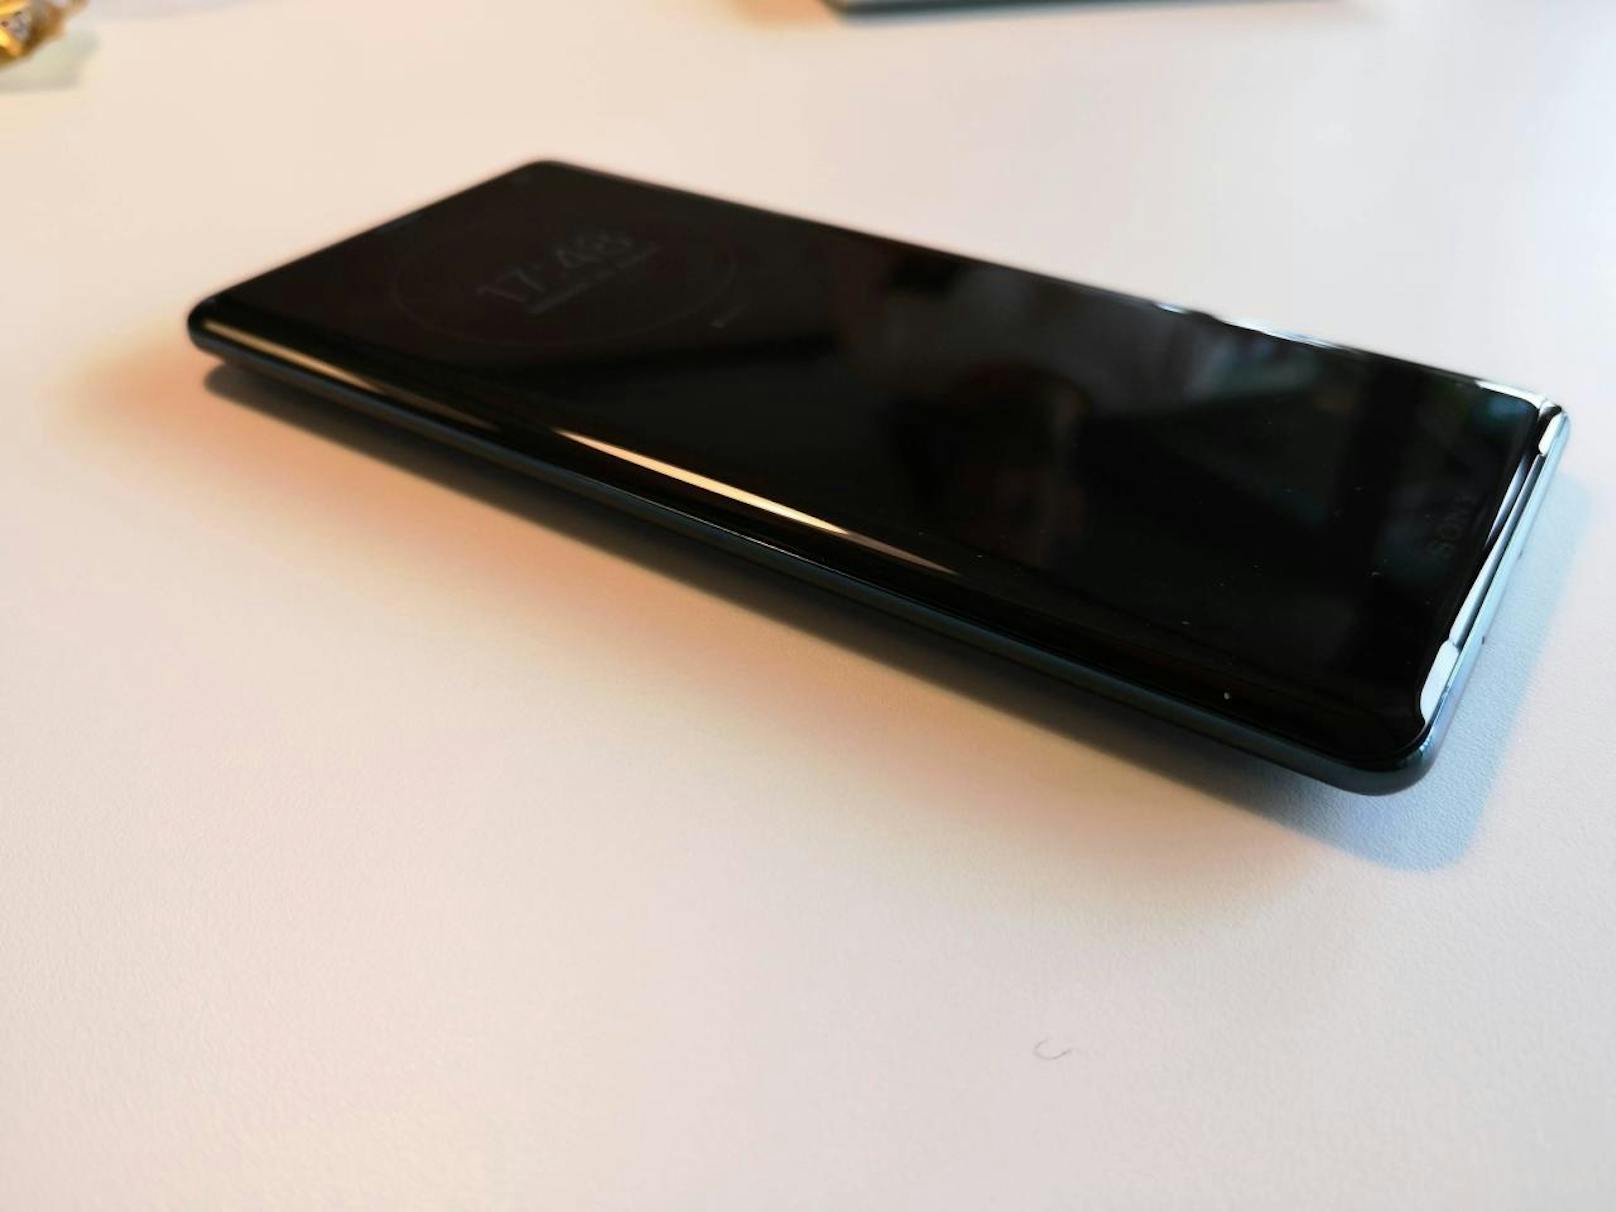 Genau wie die Rückseite besteht das 6-Zoll-Display aus Gorilla Glass 5. Im Inneren steckt ein Snapdragon 845 Prozessor, das Gerät wird mit Android Version 9 (Pie) ausgeliefert.